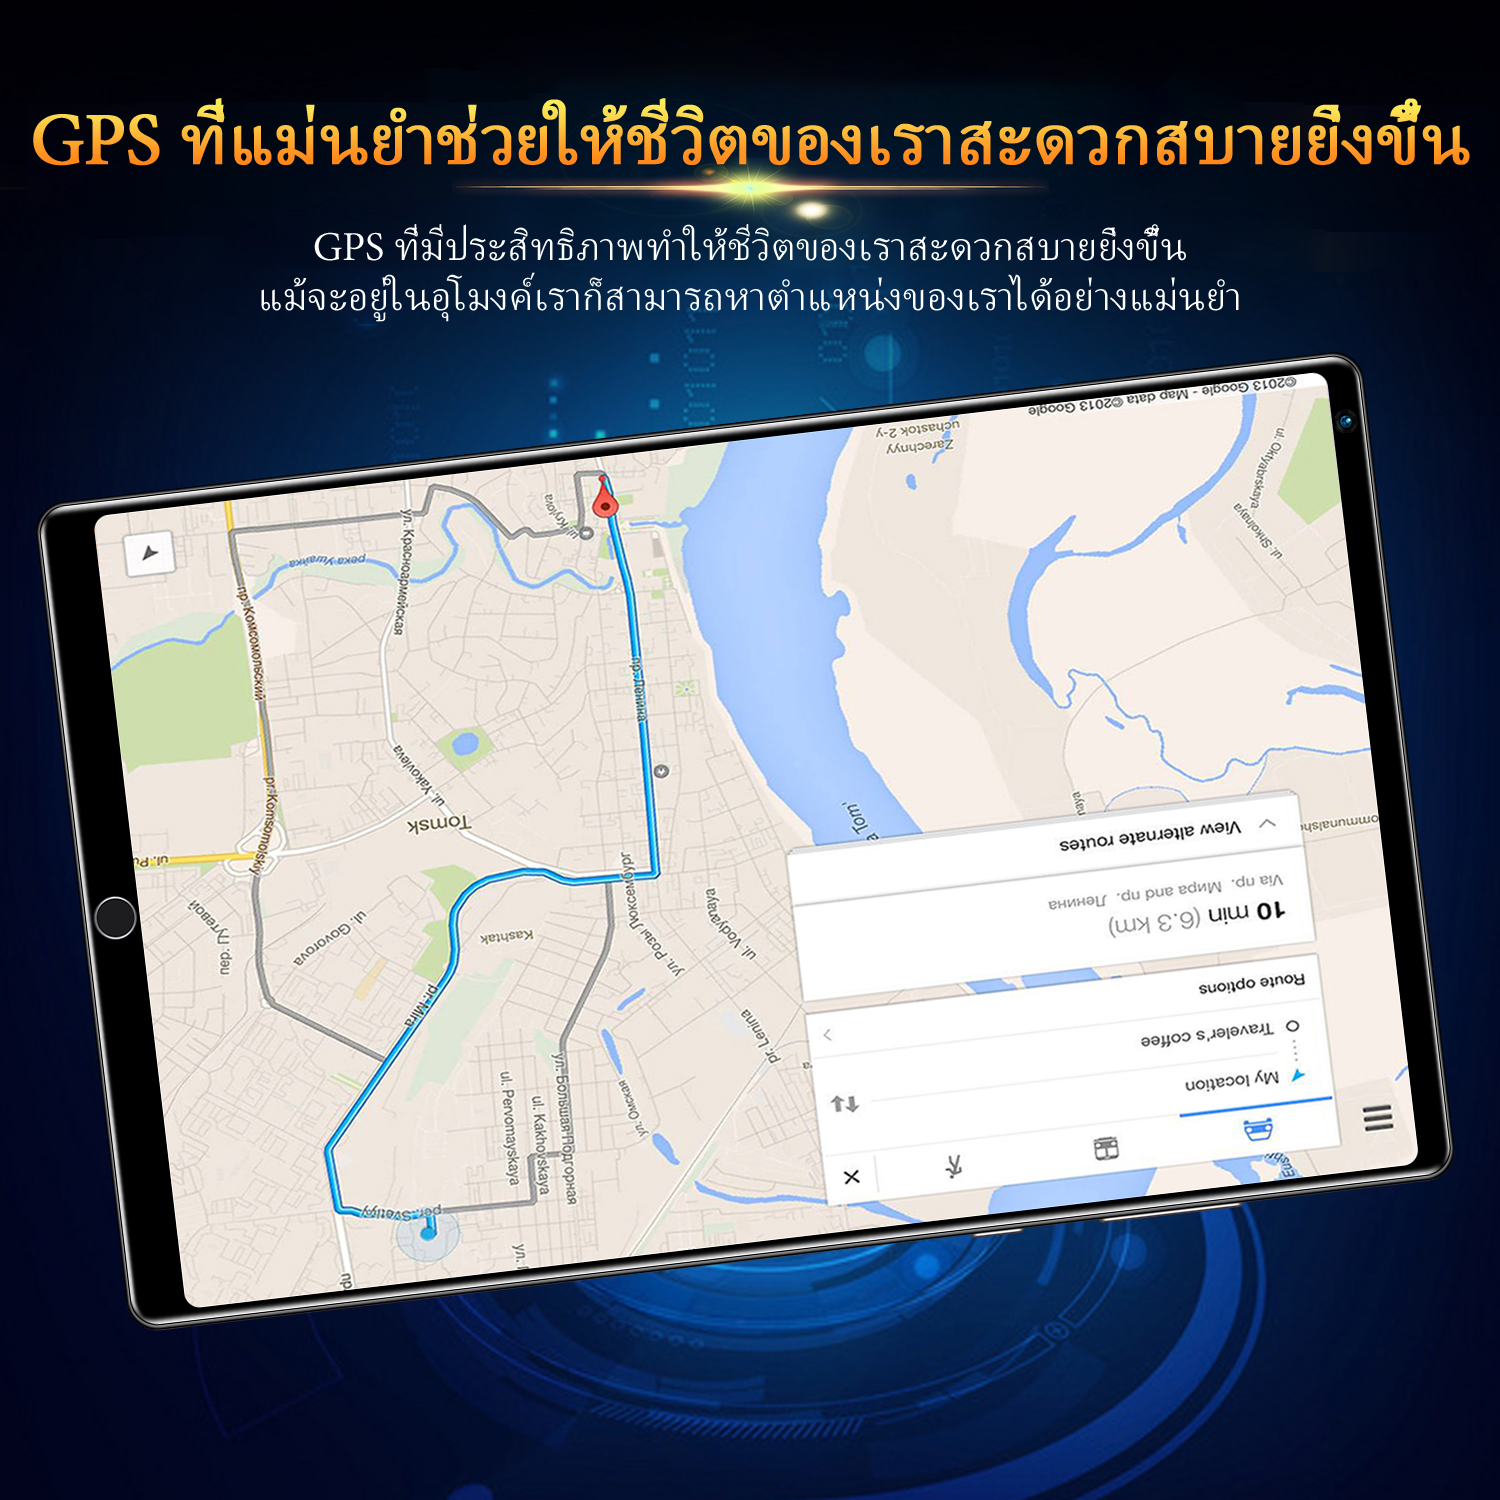 เกี่ยวกับสินค้า แท็บเล็ต VIVO Pad Wifi โทรได้ 10.1นิ้ว แท็บเล็ตถูกๆ ซัมซุง Tablet RAM12G ROM512G Andorid10.0 แท็บเล็ต จัดส่งฟรี แทบเล็ตราคาถูก รองรับภาษาไทย แท็บเล็ตสำหรับเล่นเกมราคาถูก ไอเเพ็ด Tablet Full HD แท็บเล็ตราคาถูกๆ แท็บเล็ตราคาถูกรุ่นล่าสุด